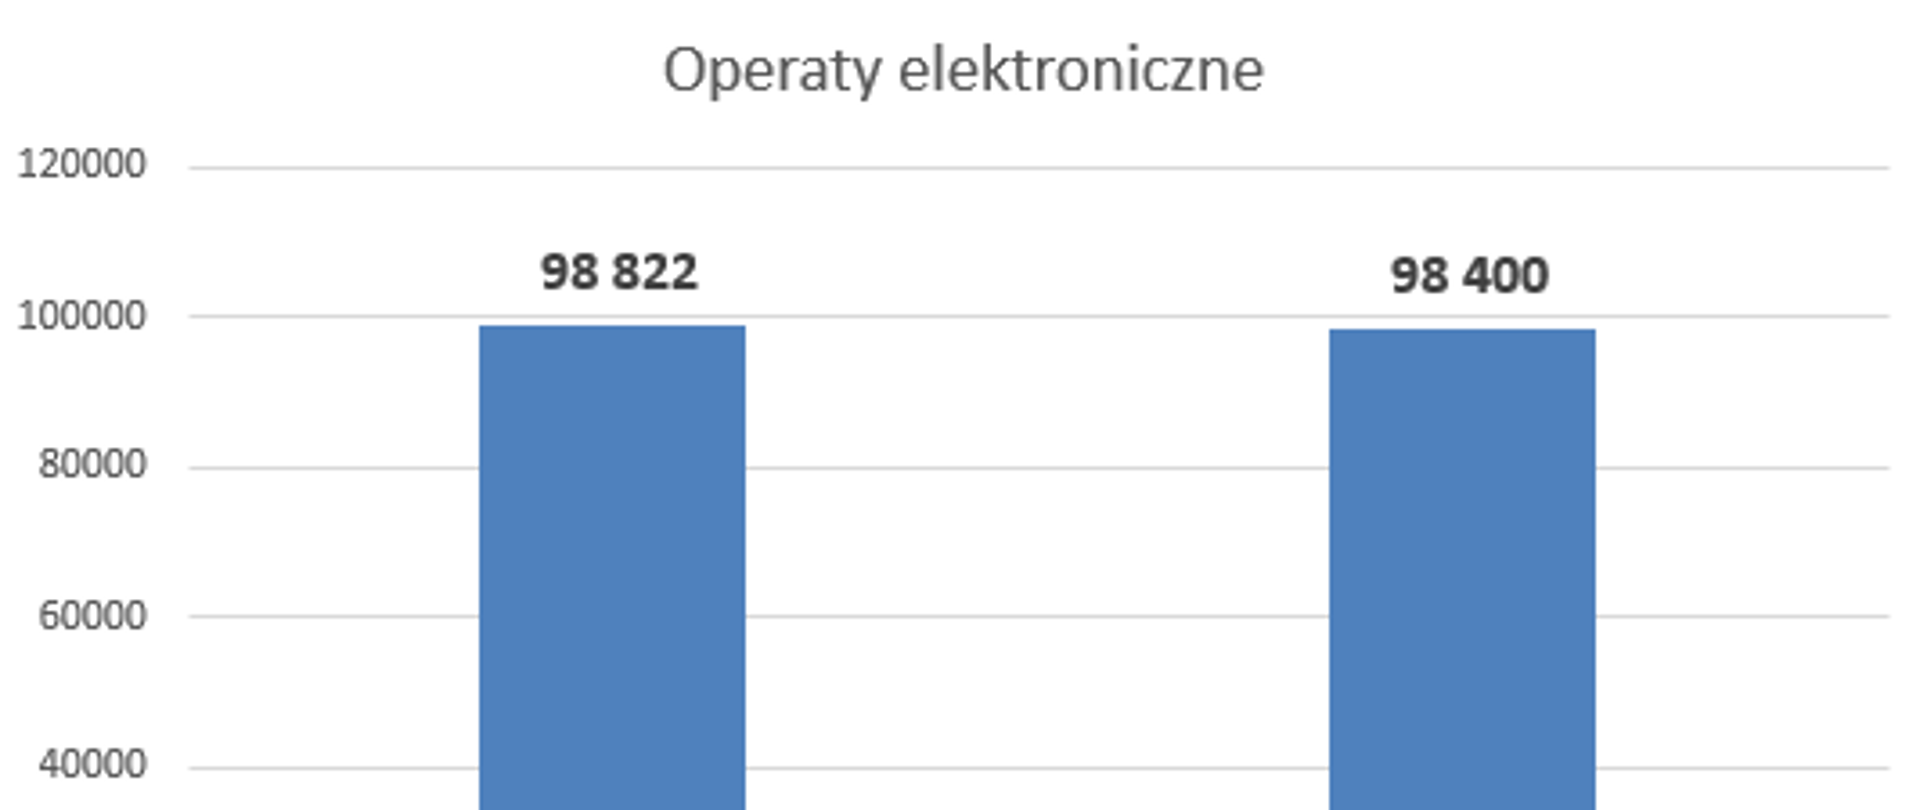 Na rysunku znajduje się wykres obrazujący liczbę wszystkich operatów (98 822)oraz operatów elektronicznych (98 400) przyjętych do zasobu w marcu 2022 r.